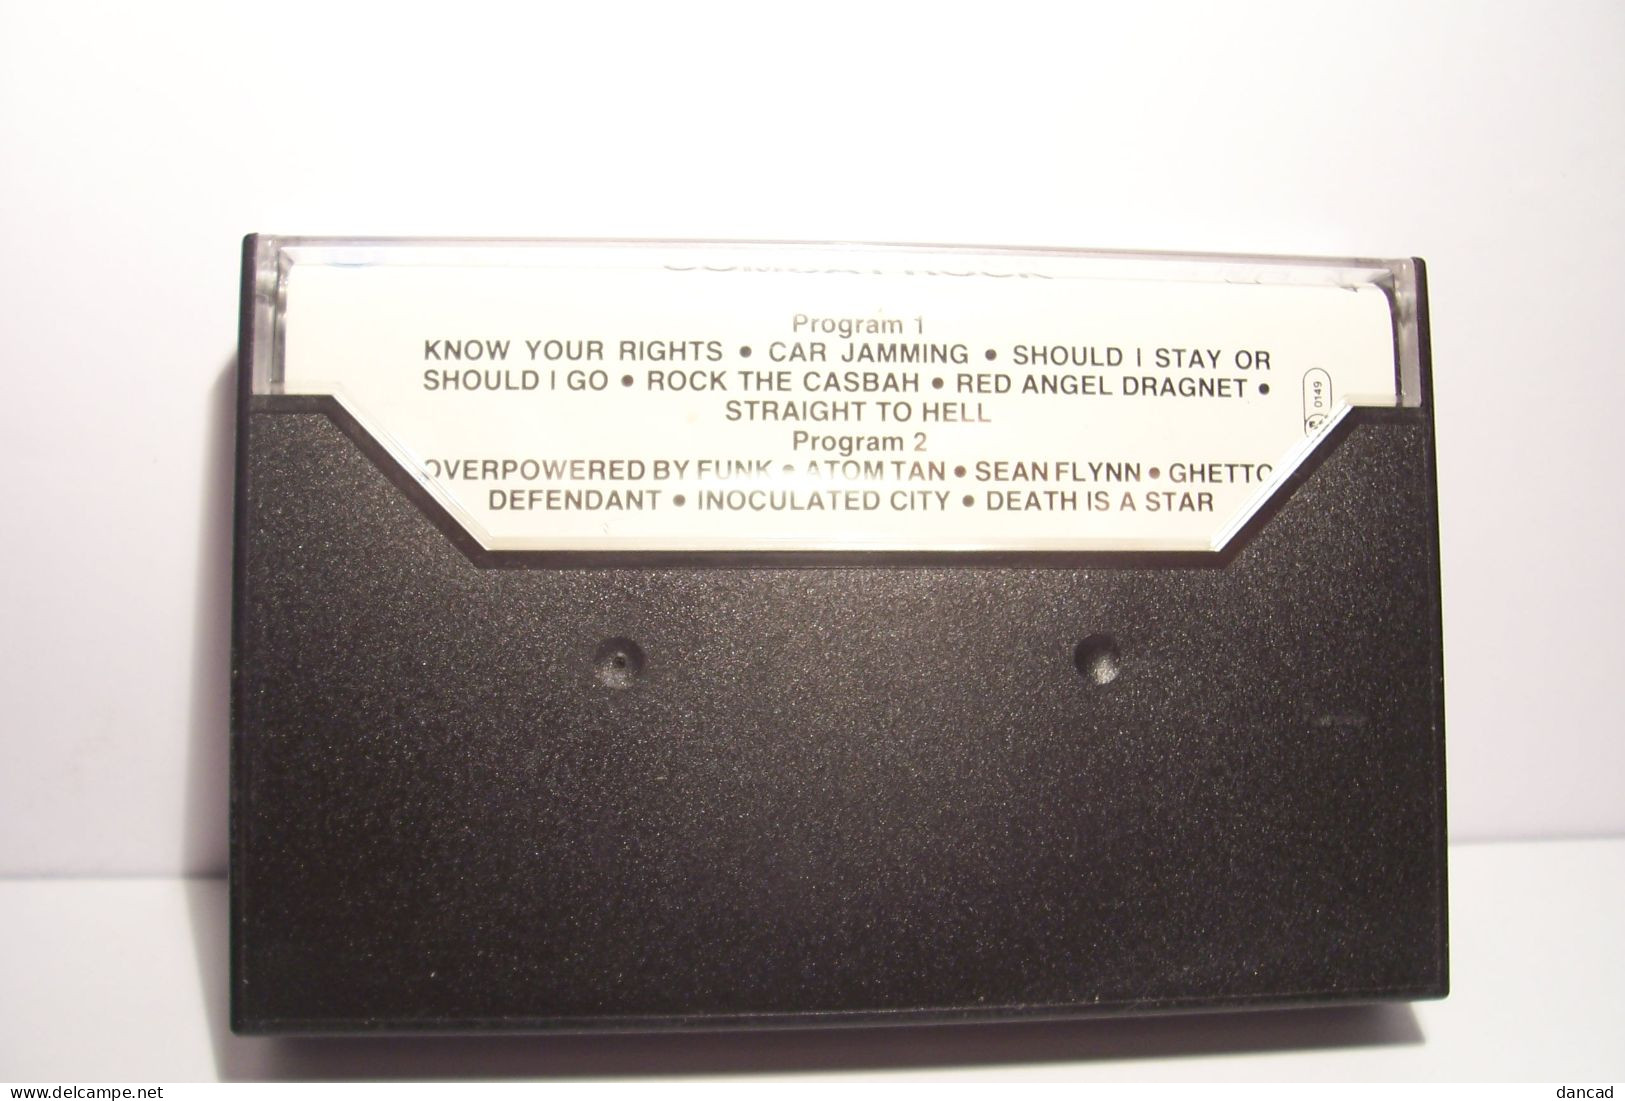 THE CLASH   - COMBAT  ROCK  - 1982    - K7 Audio - 12 TITRES - - Cassettes Audio